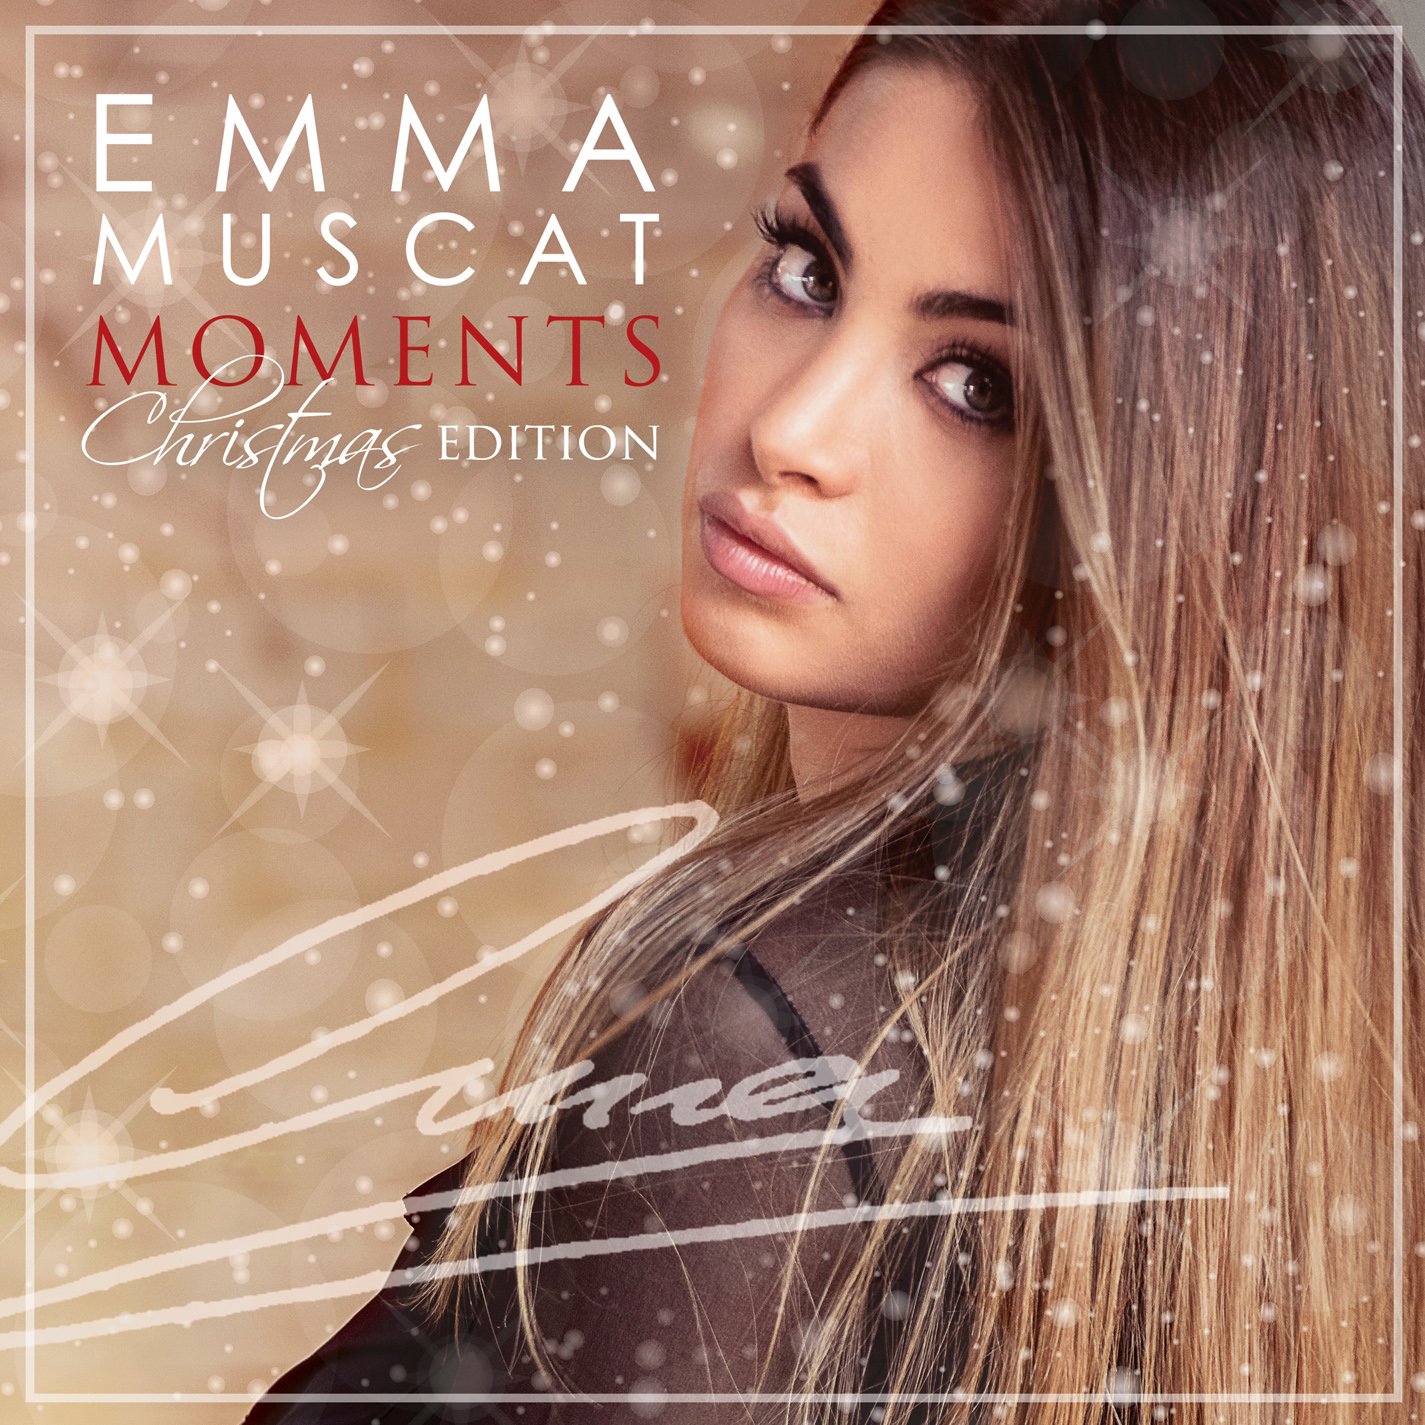 Emma Muscat pubblica “Moments Christmas Edition”, il suo album in edizione natalizia